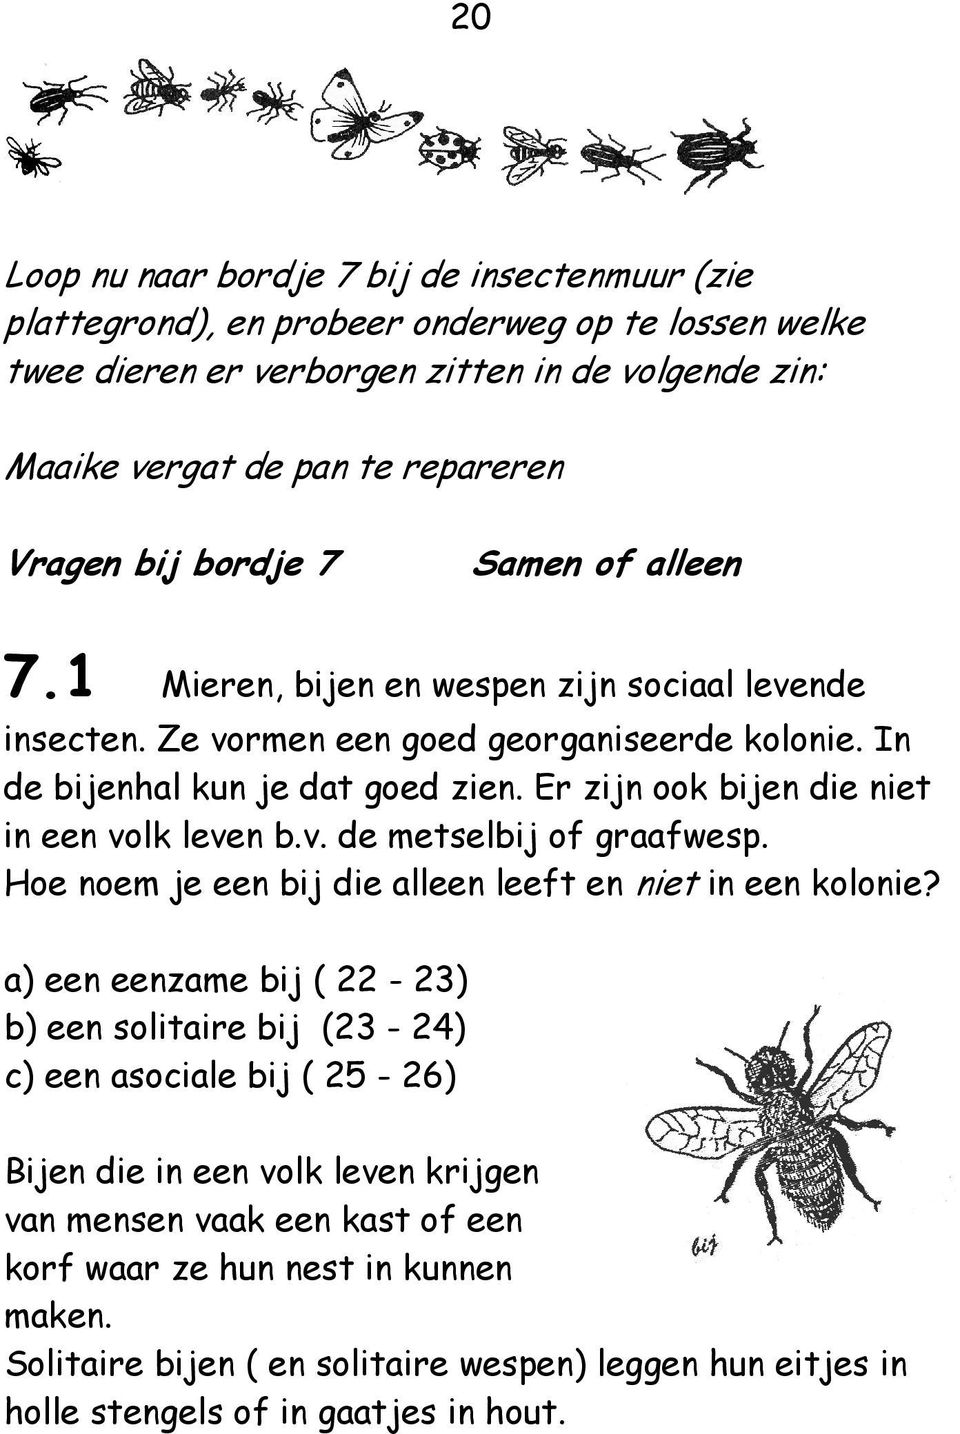 Er zijn ook bijen die niet in een volk leven b.v. de metselbij of graafwesp. Hoe noem je een bij die alleen leeft en niet in een kolonie?